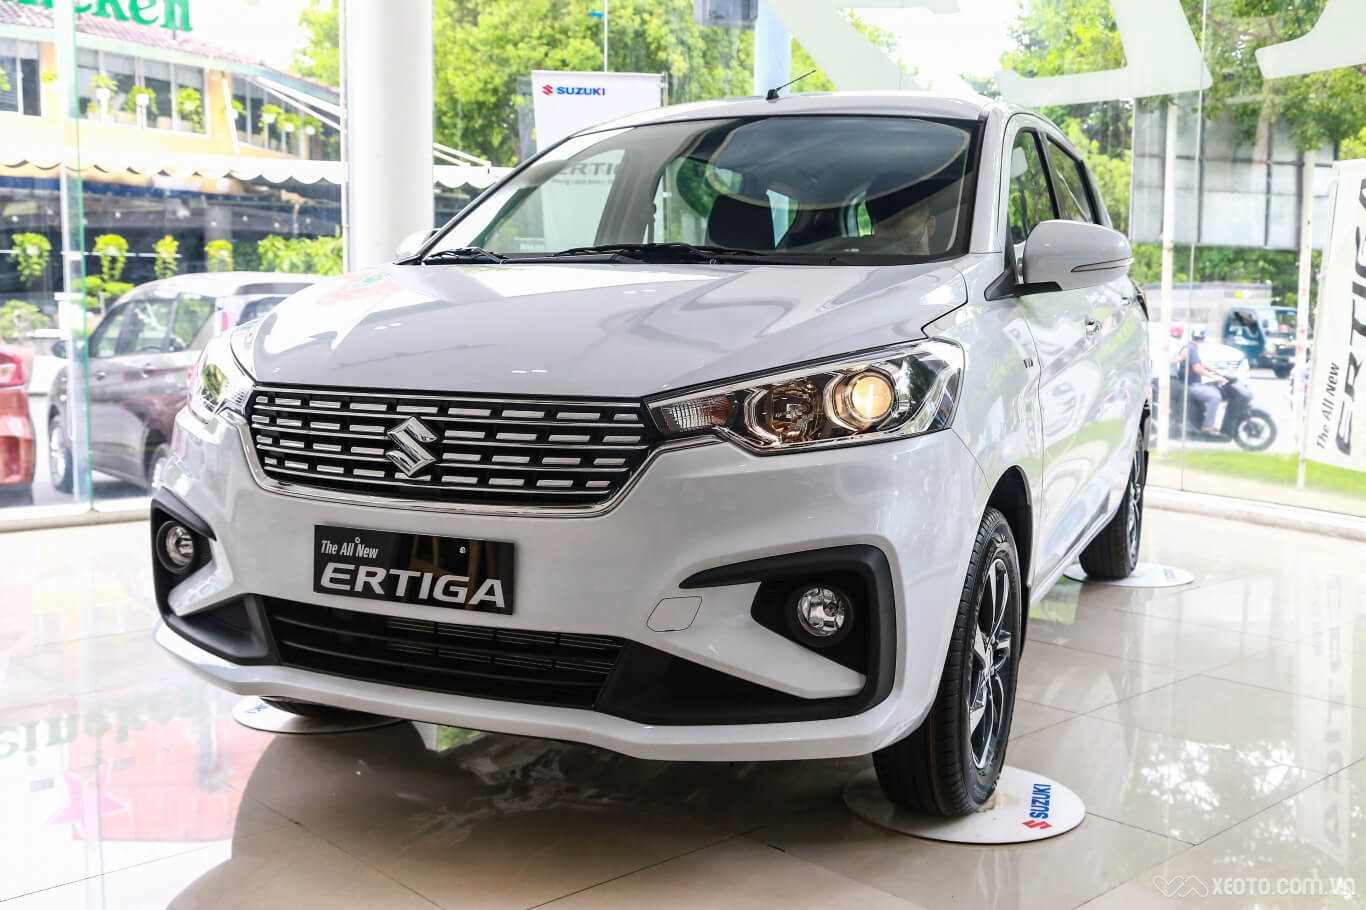 Thiết kế thân xe Suzuki Ertiga 2022 toát lên vẻ thời trang mềm mại